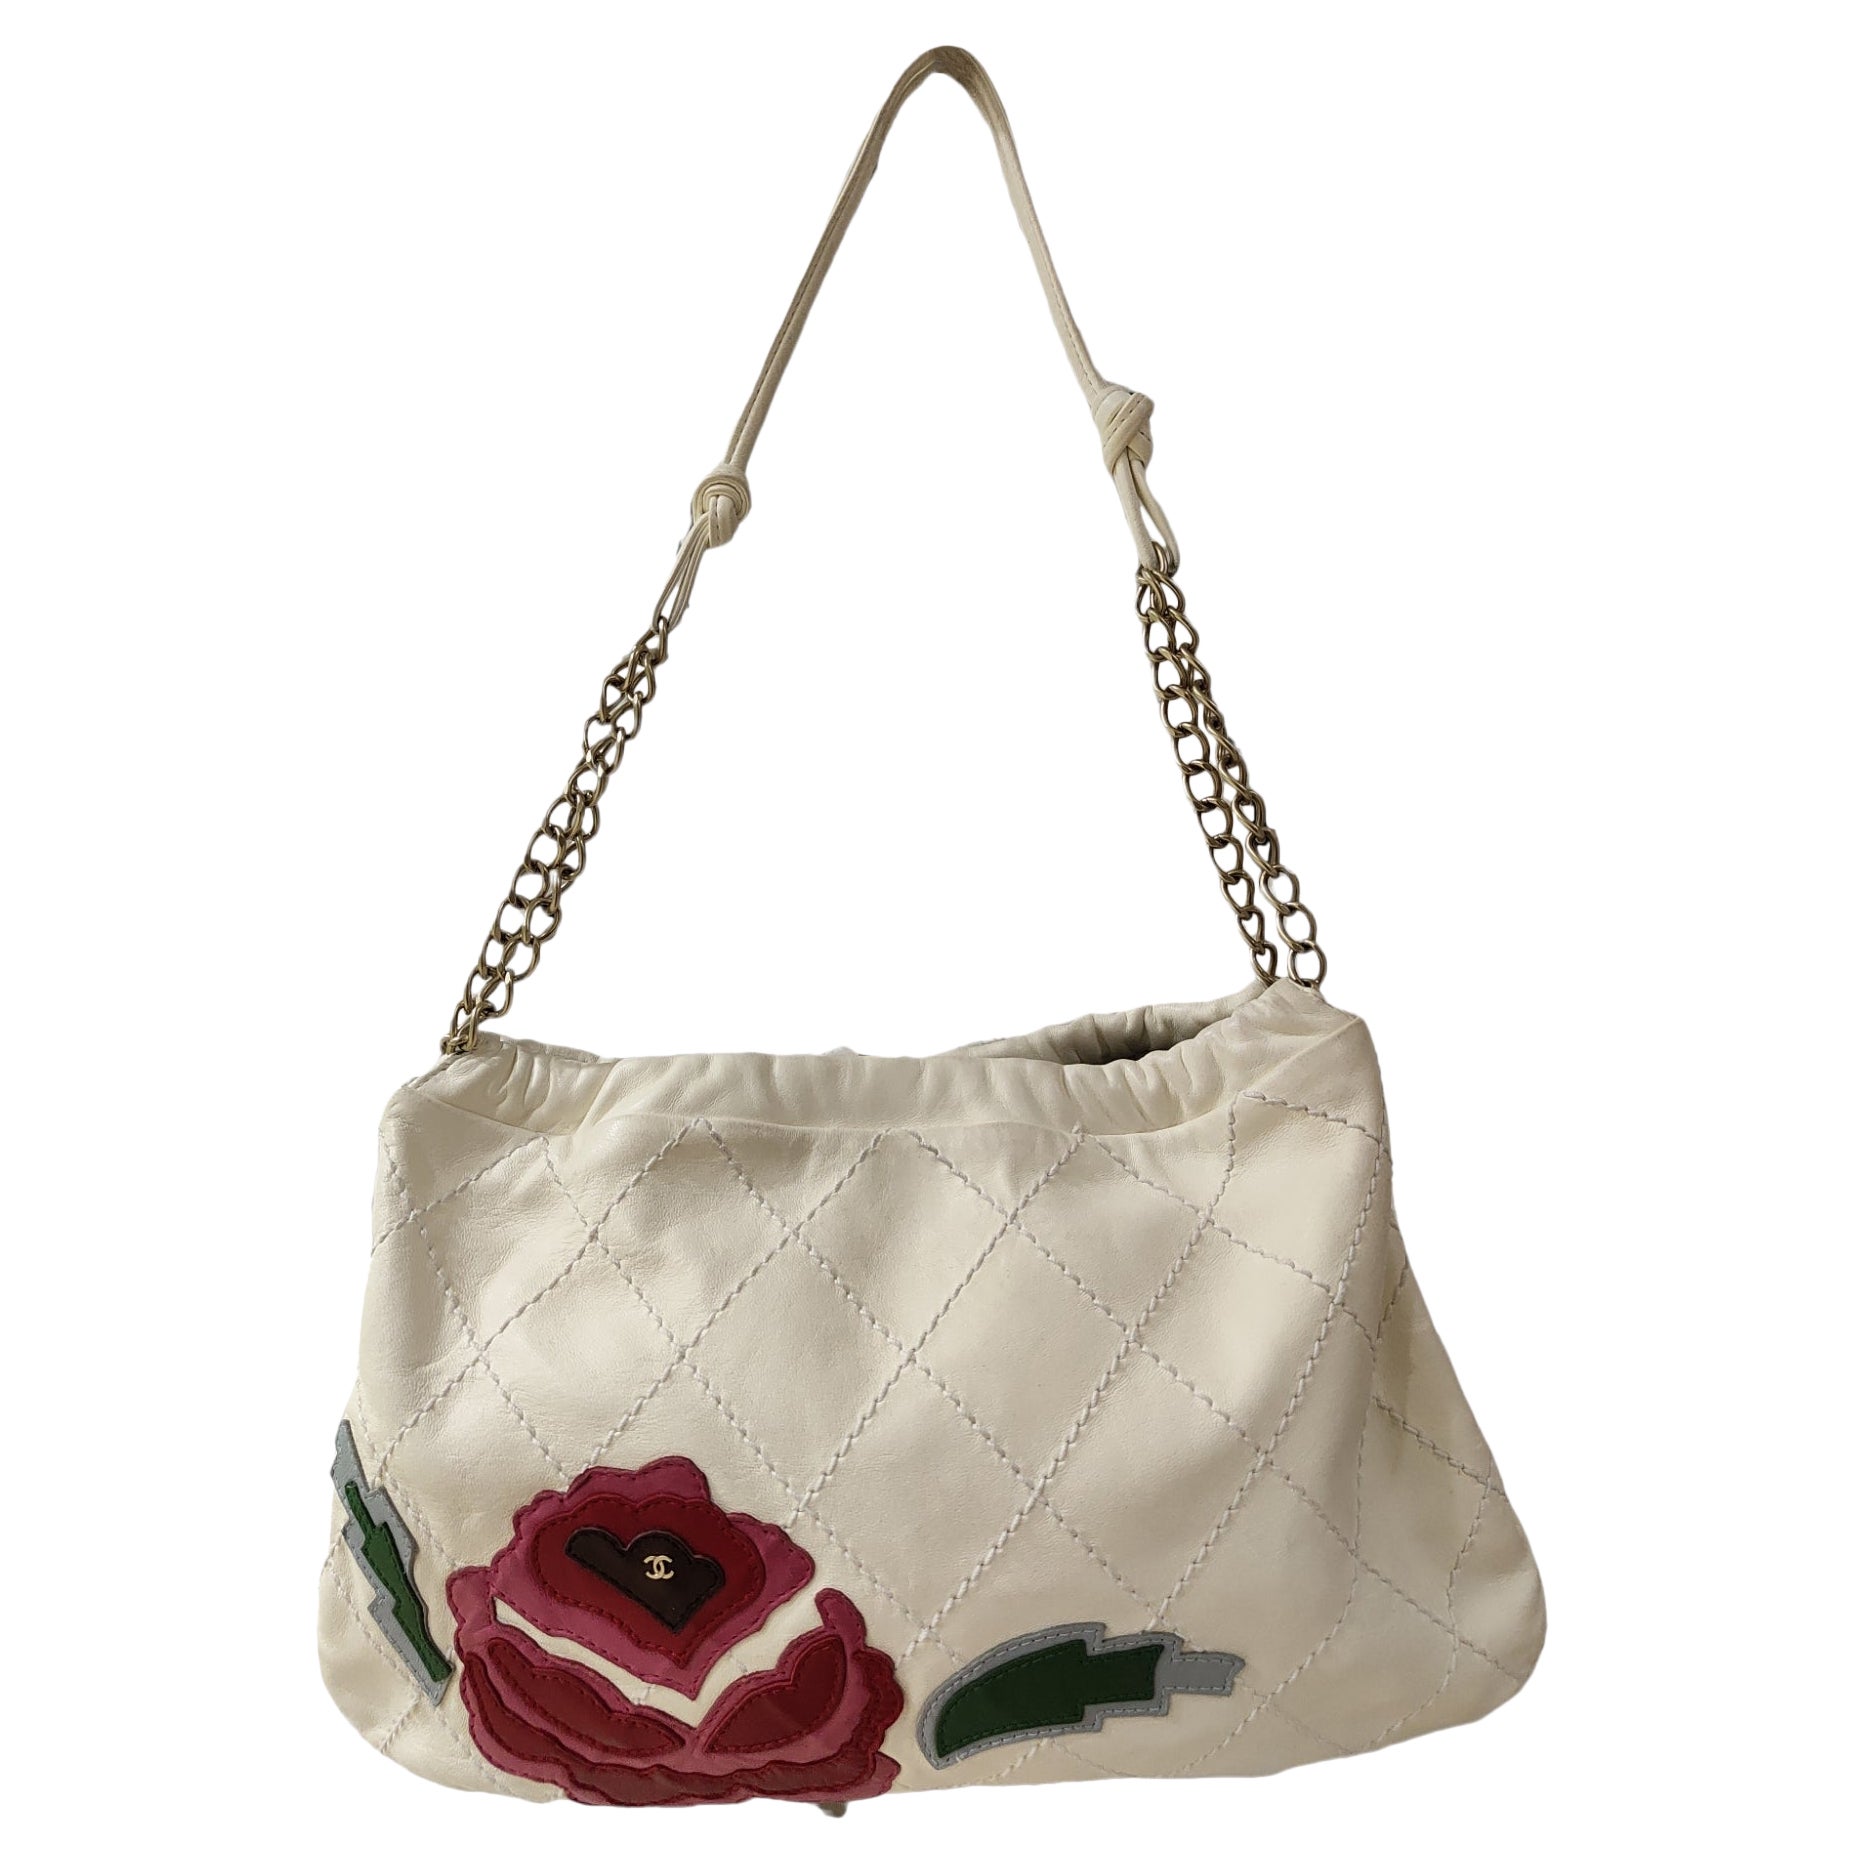 Chanel Flower Bag - 9 For Sale on 1stDibs | flower chanel bag